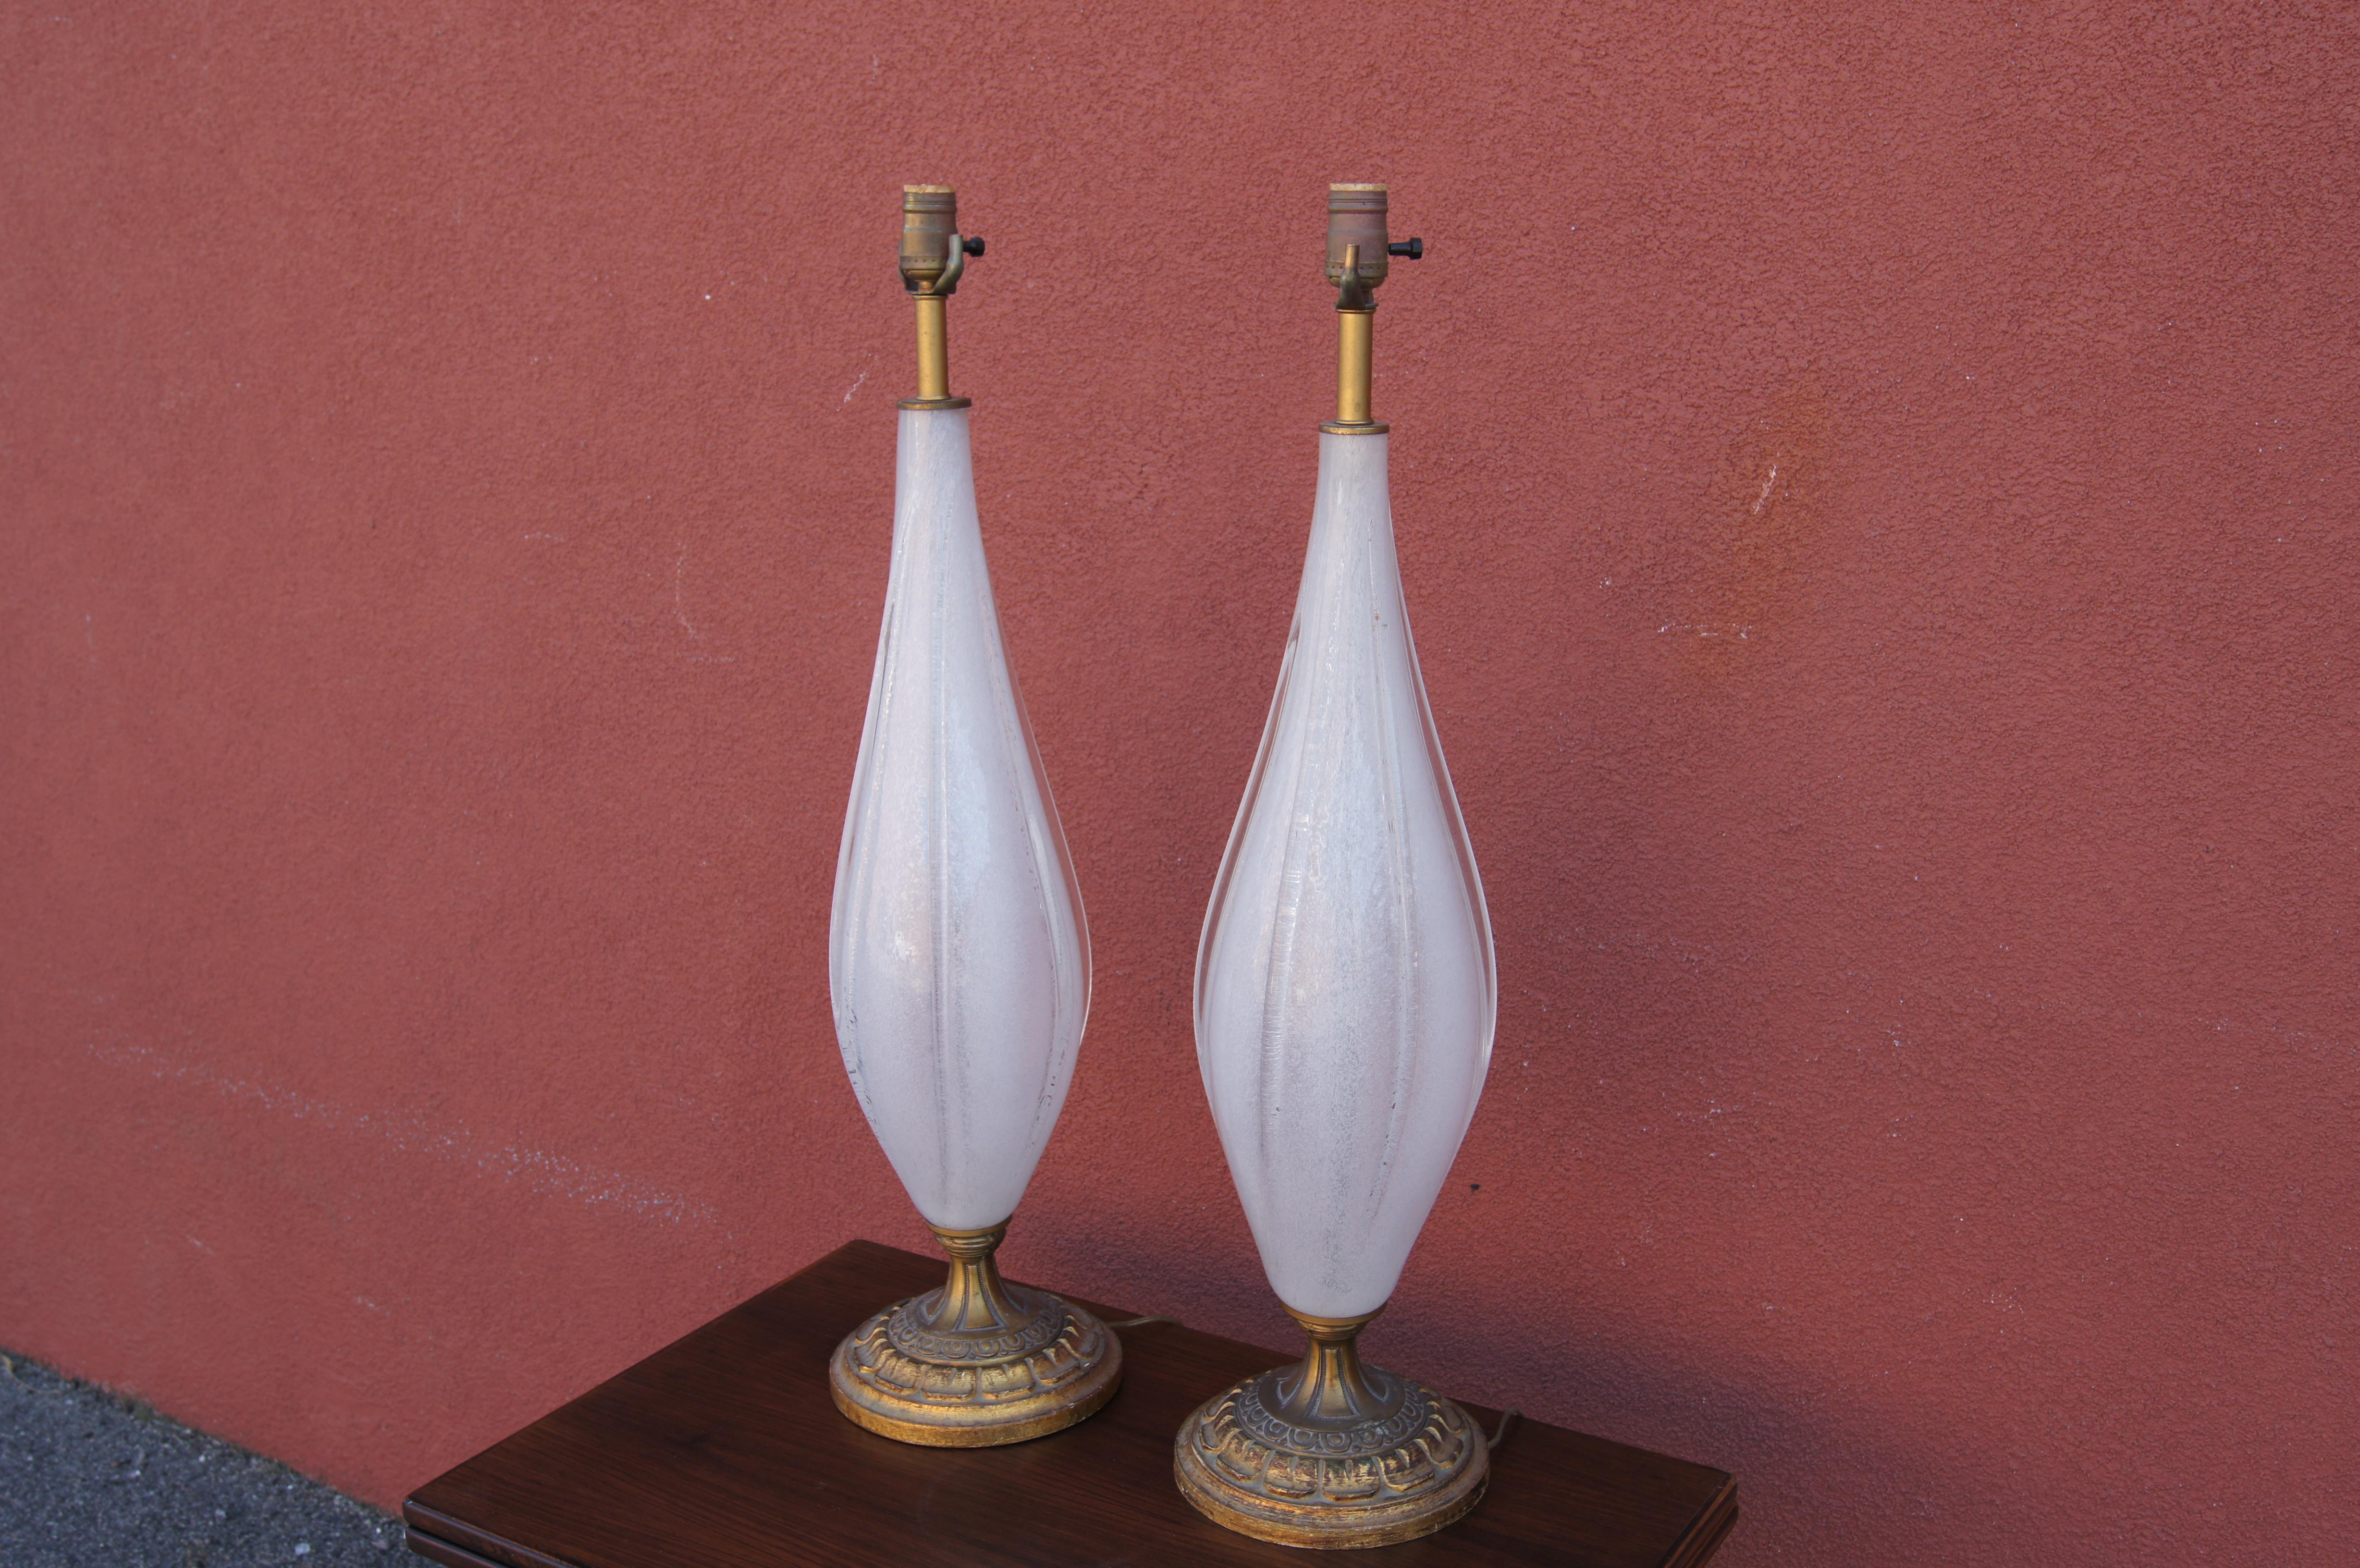 Dieses schlanke Paar italienischer Tischlampen besteht aus mundgeblasenen weißen Muranoglastropfen auf geschnitzten, goldfarbenen Holzsockeln.

Verkauft ohne Schirme.